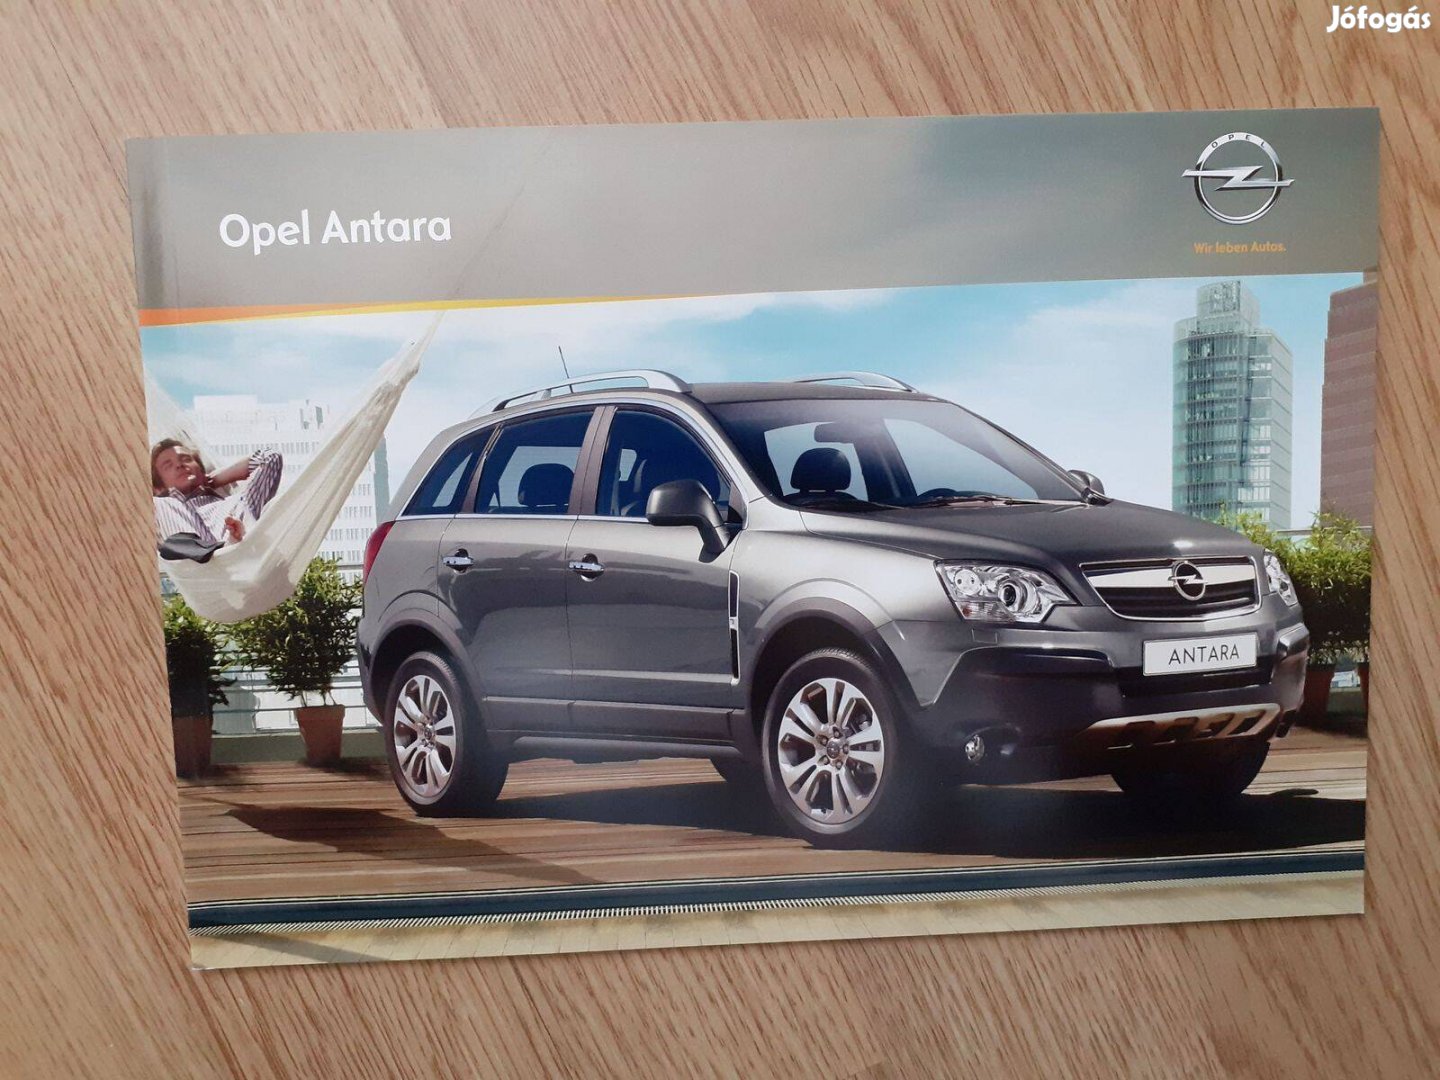 Opel Antara prospektus - 2009, magyar nyelvű